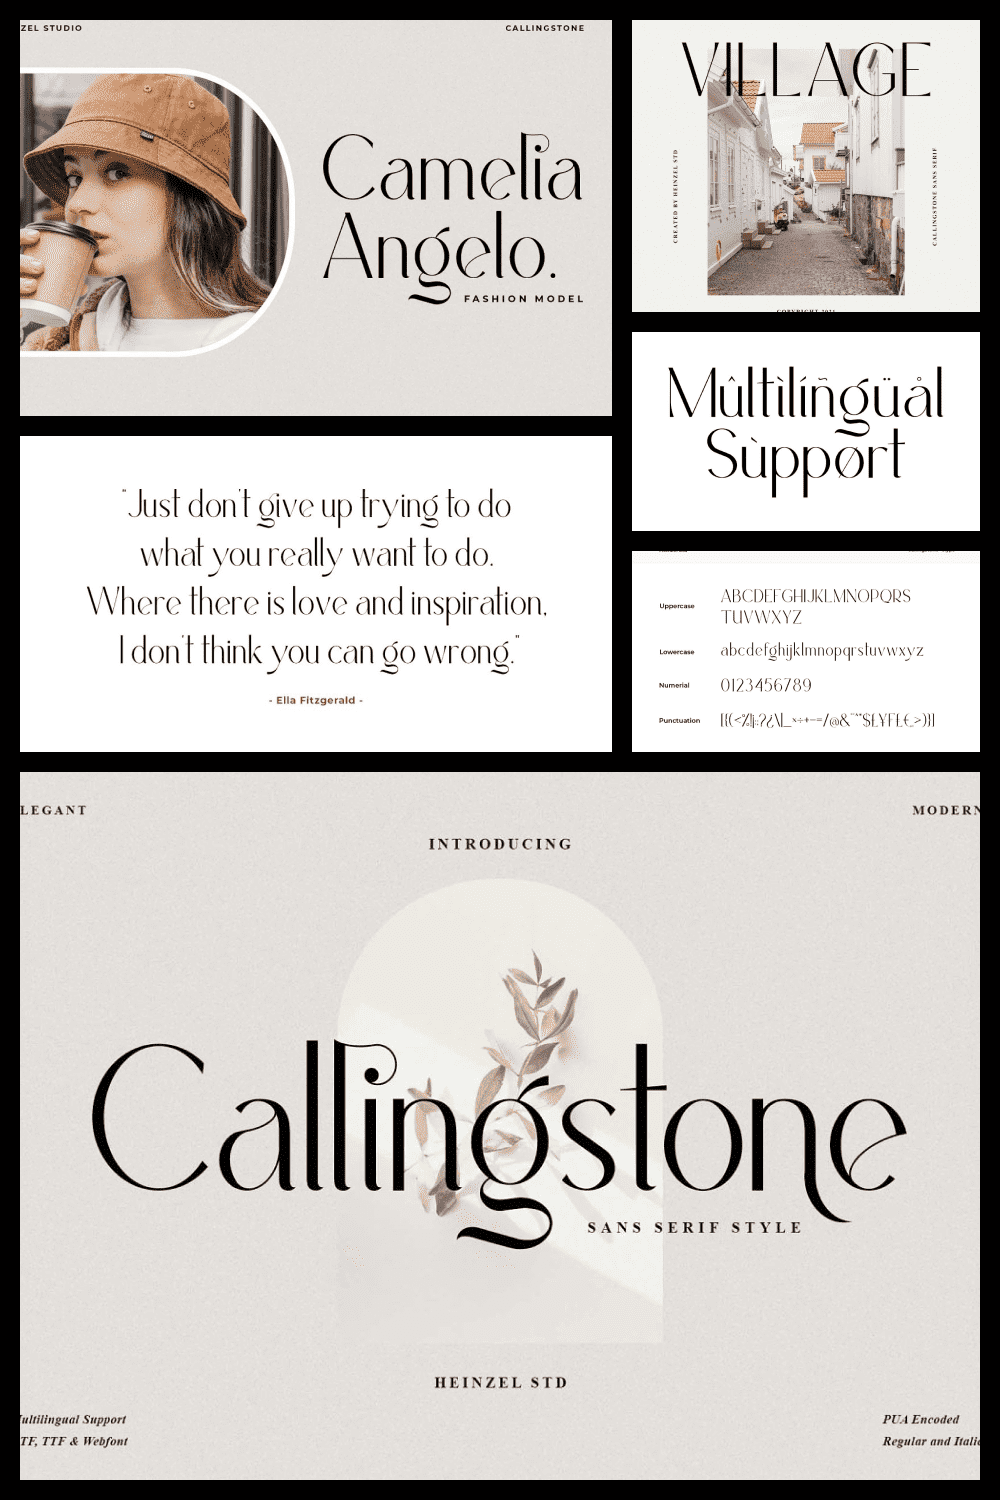 Callingstone - modern and elegant.